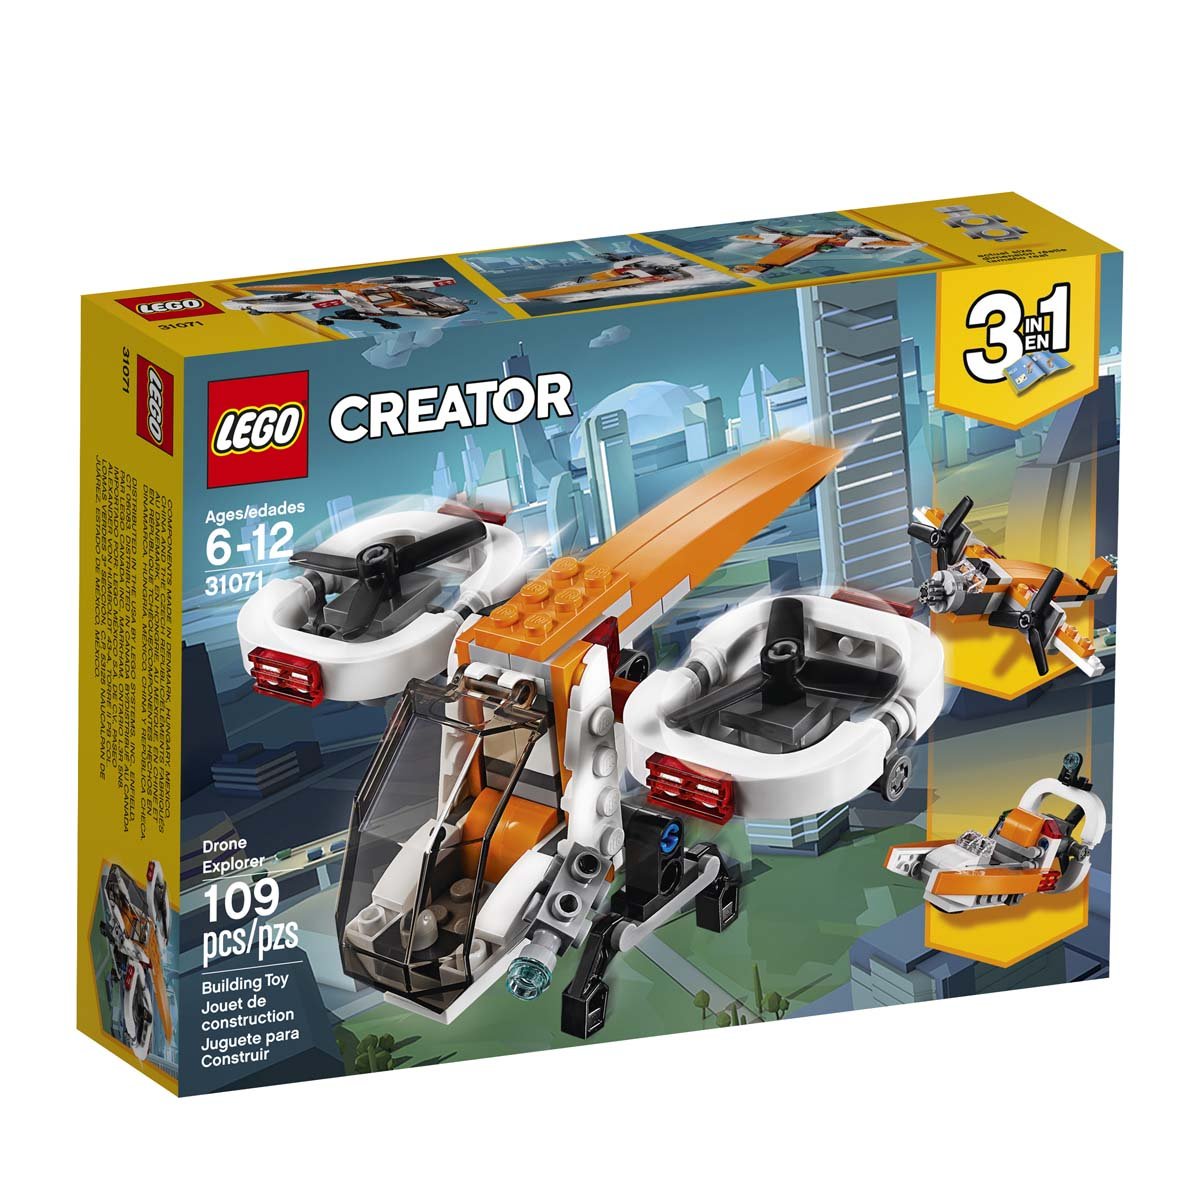 Dron de Exploraci&oacute;n Lego